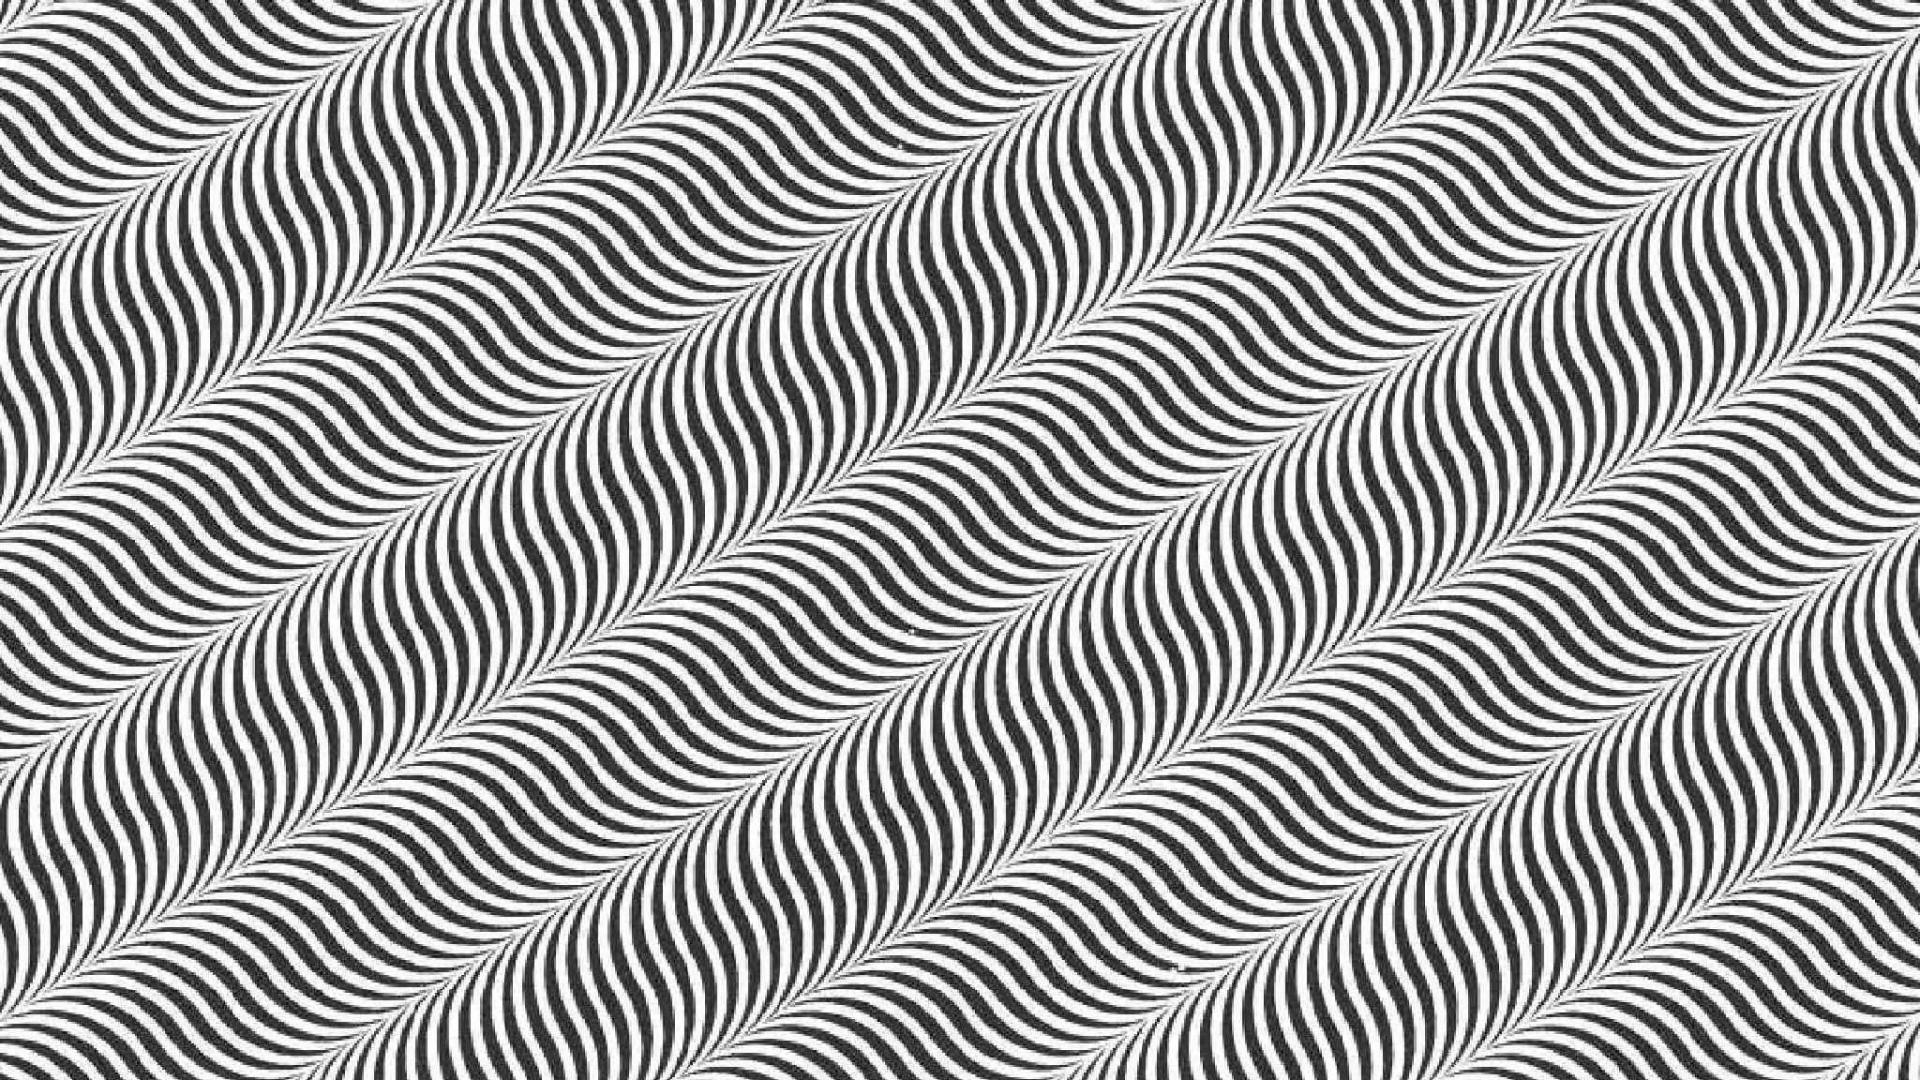 Illusion a wallpaper